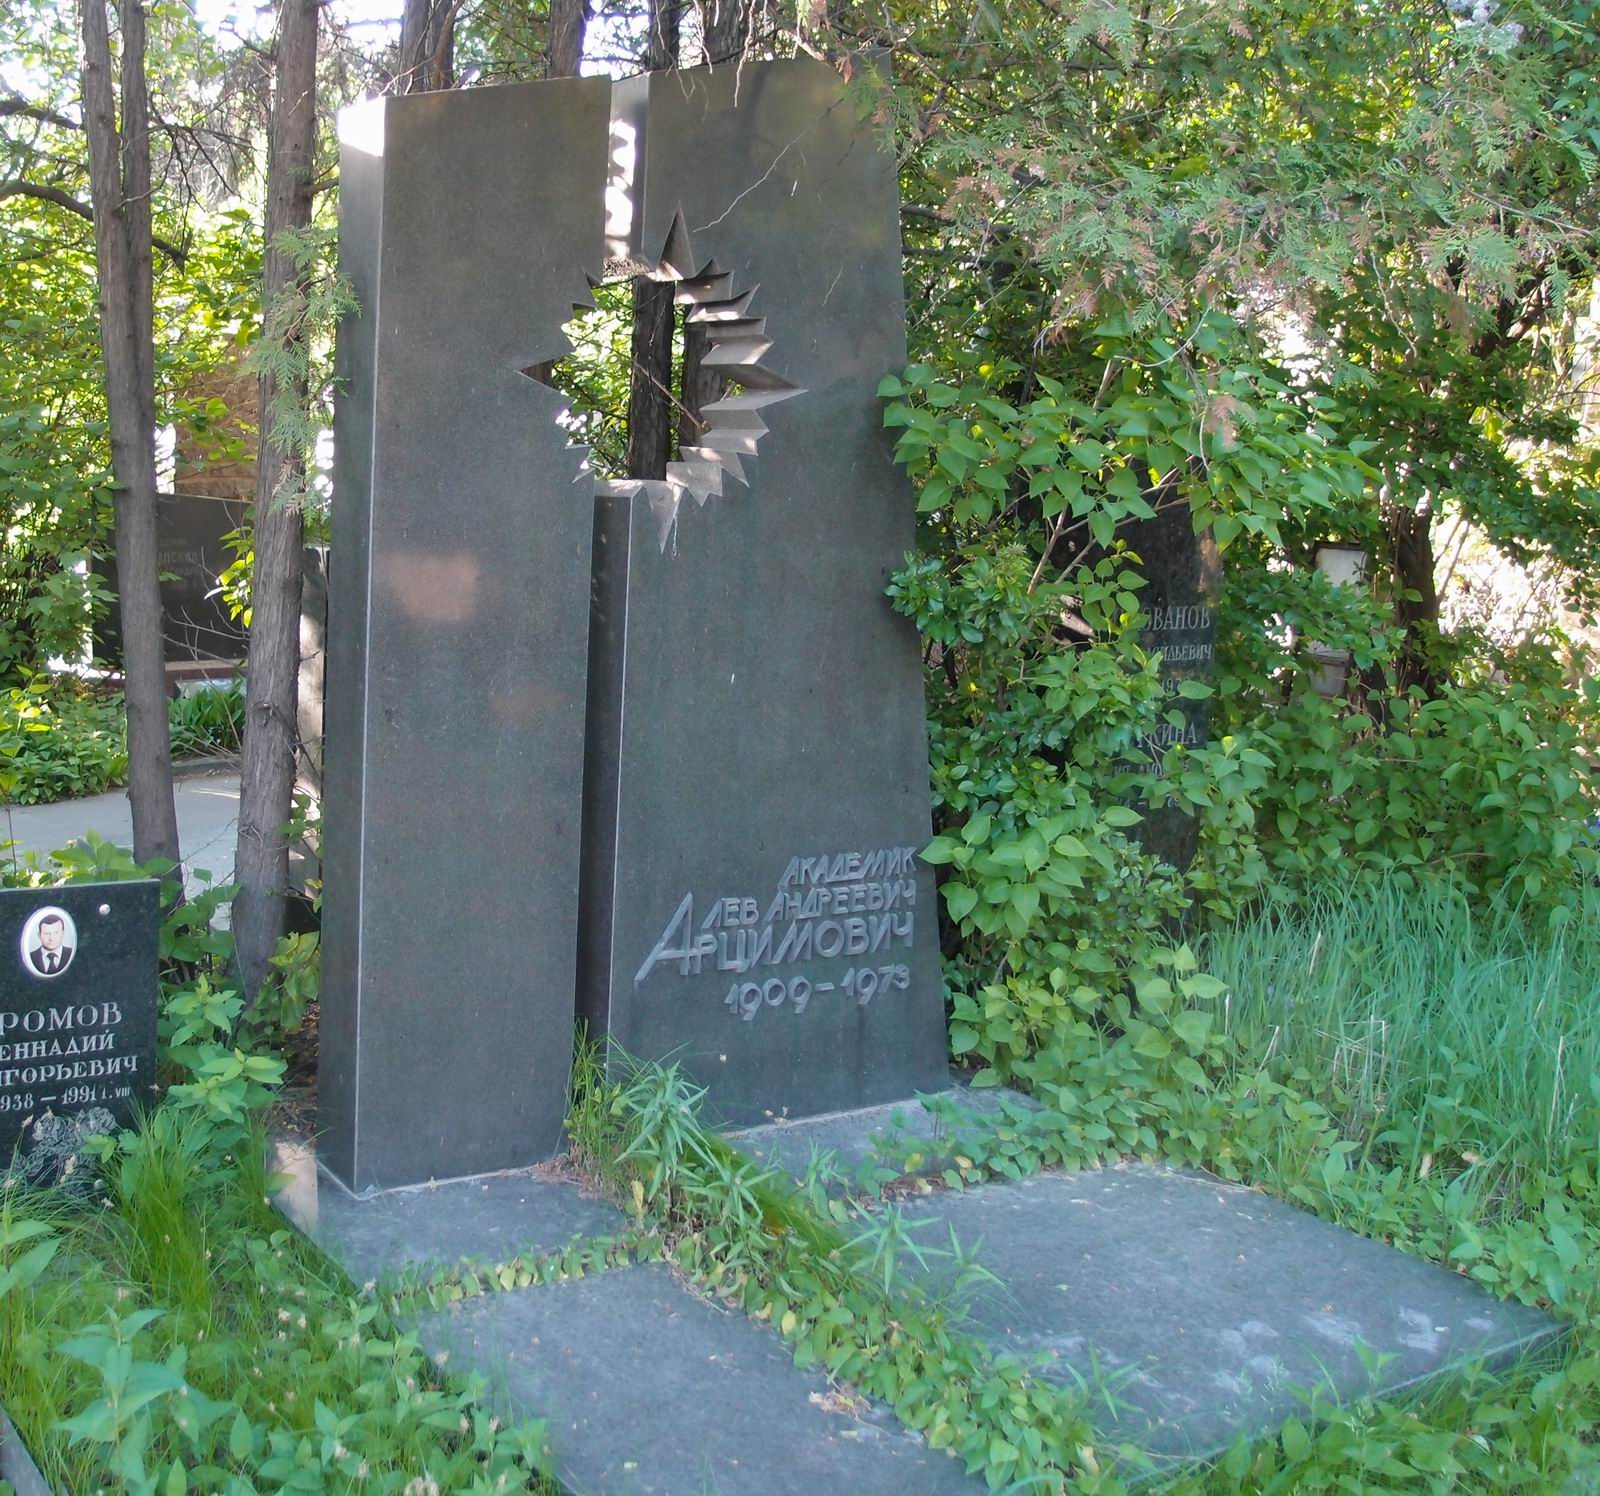 Памятник на могиле Арцимовича Л.А. (1909-1973), на Новодевичьем кладбище (7-3-25).